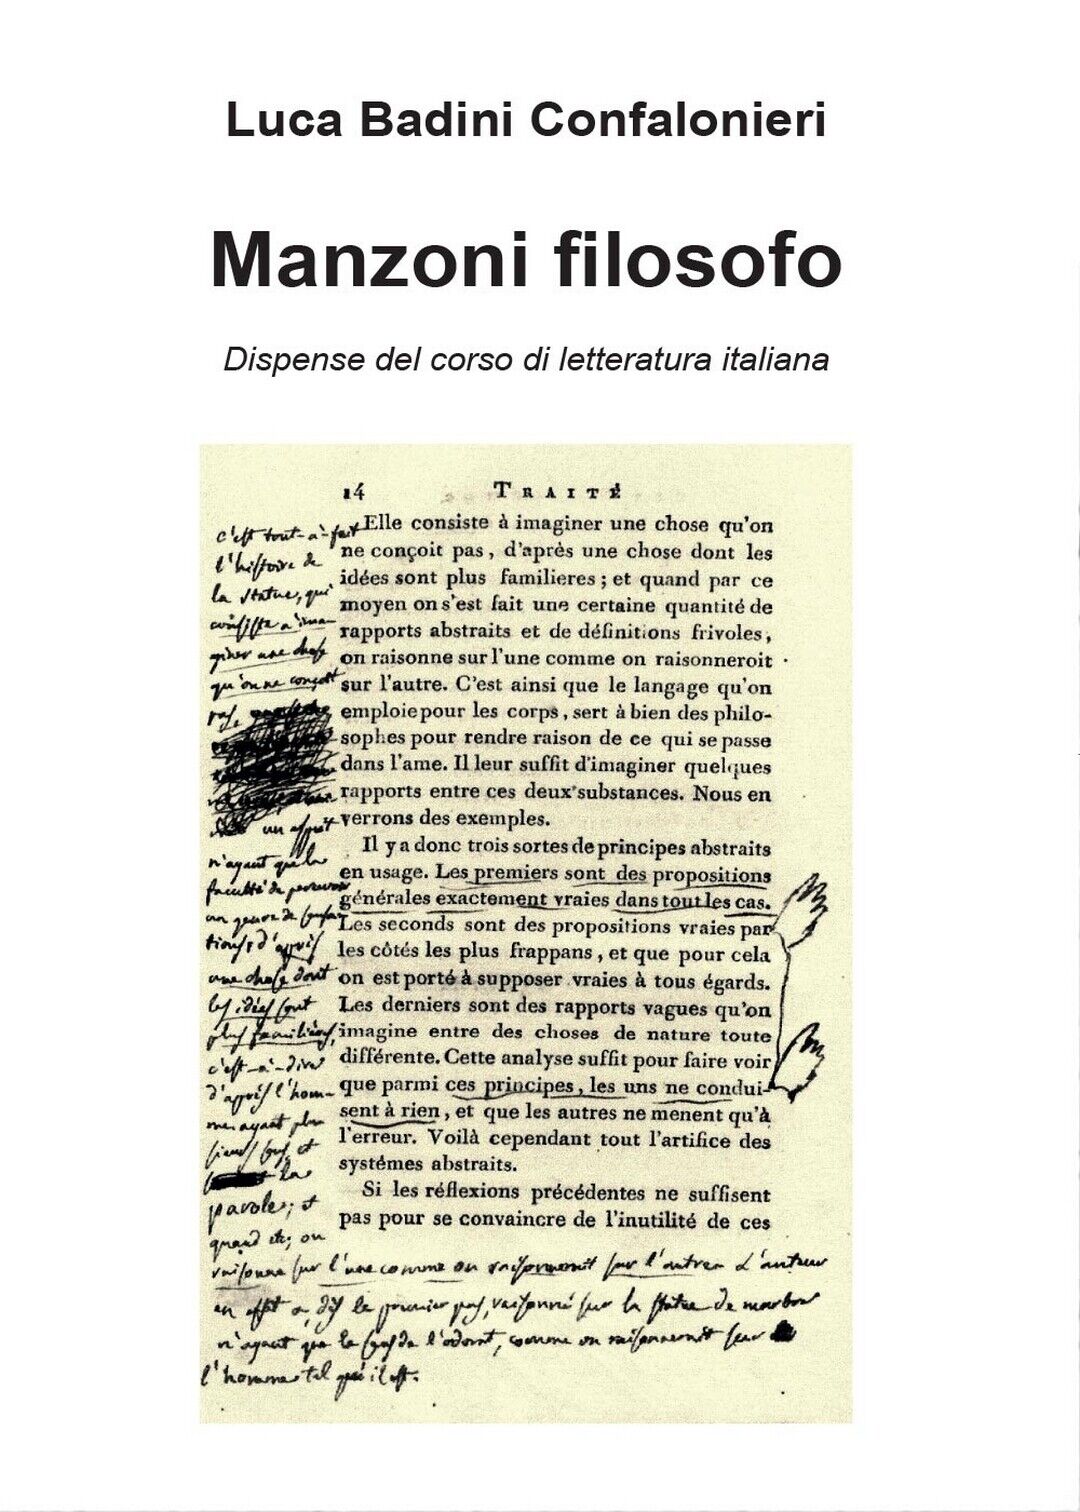 Manzoni filosofo. Dispense del corso di letteratura italiana (L. B.Confalonieri)